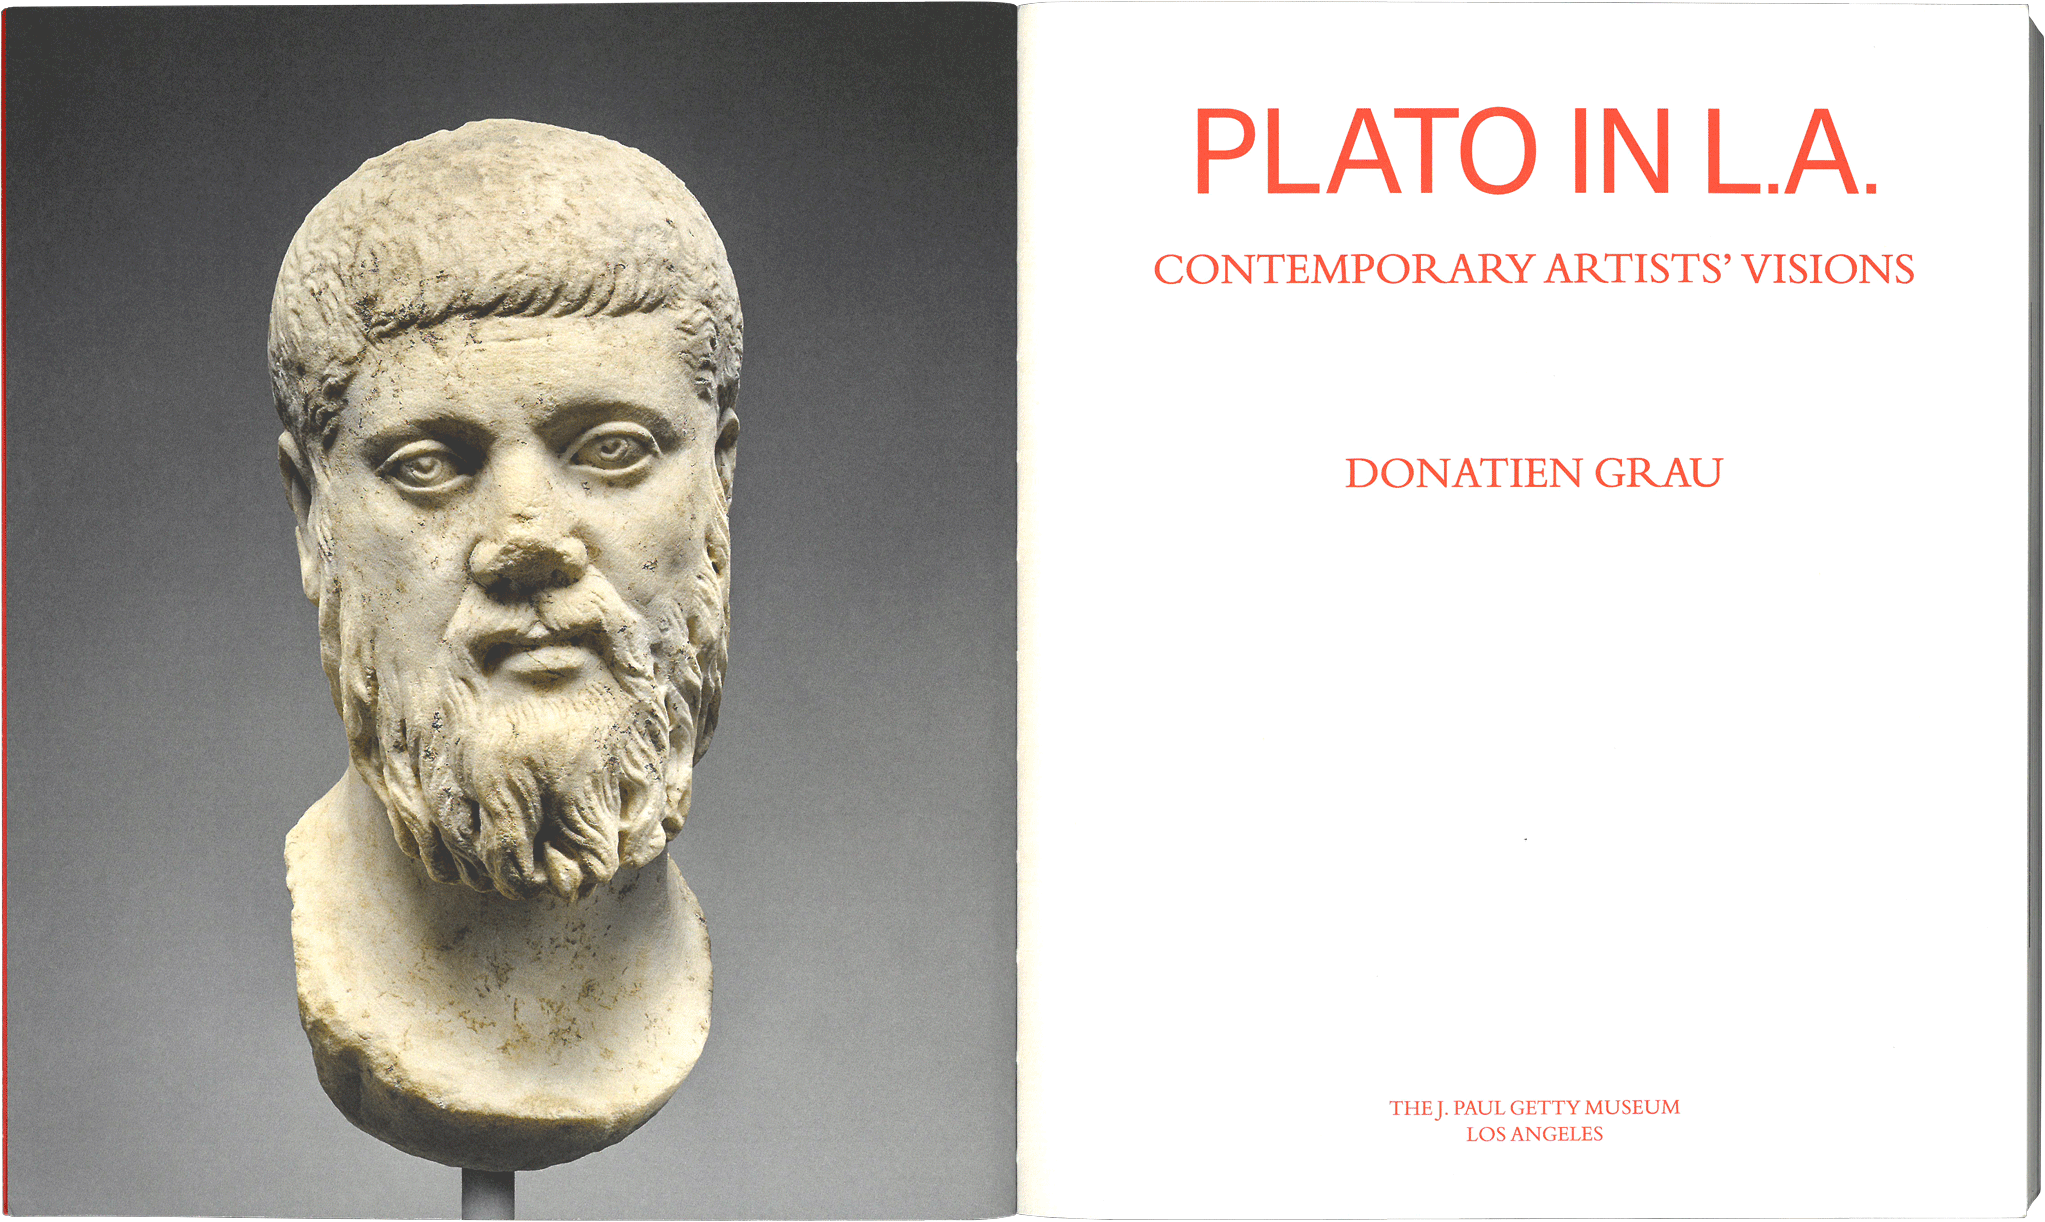 Plato in L.A. spread